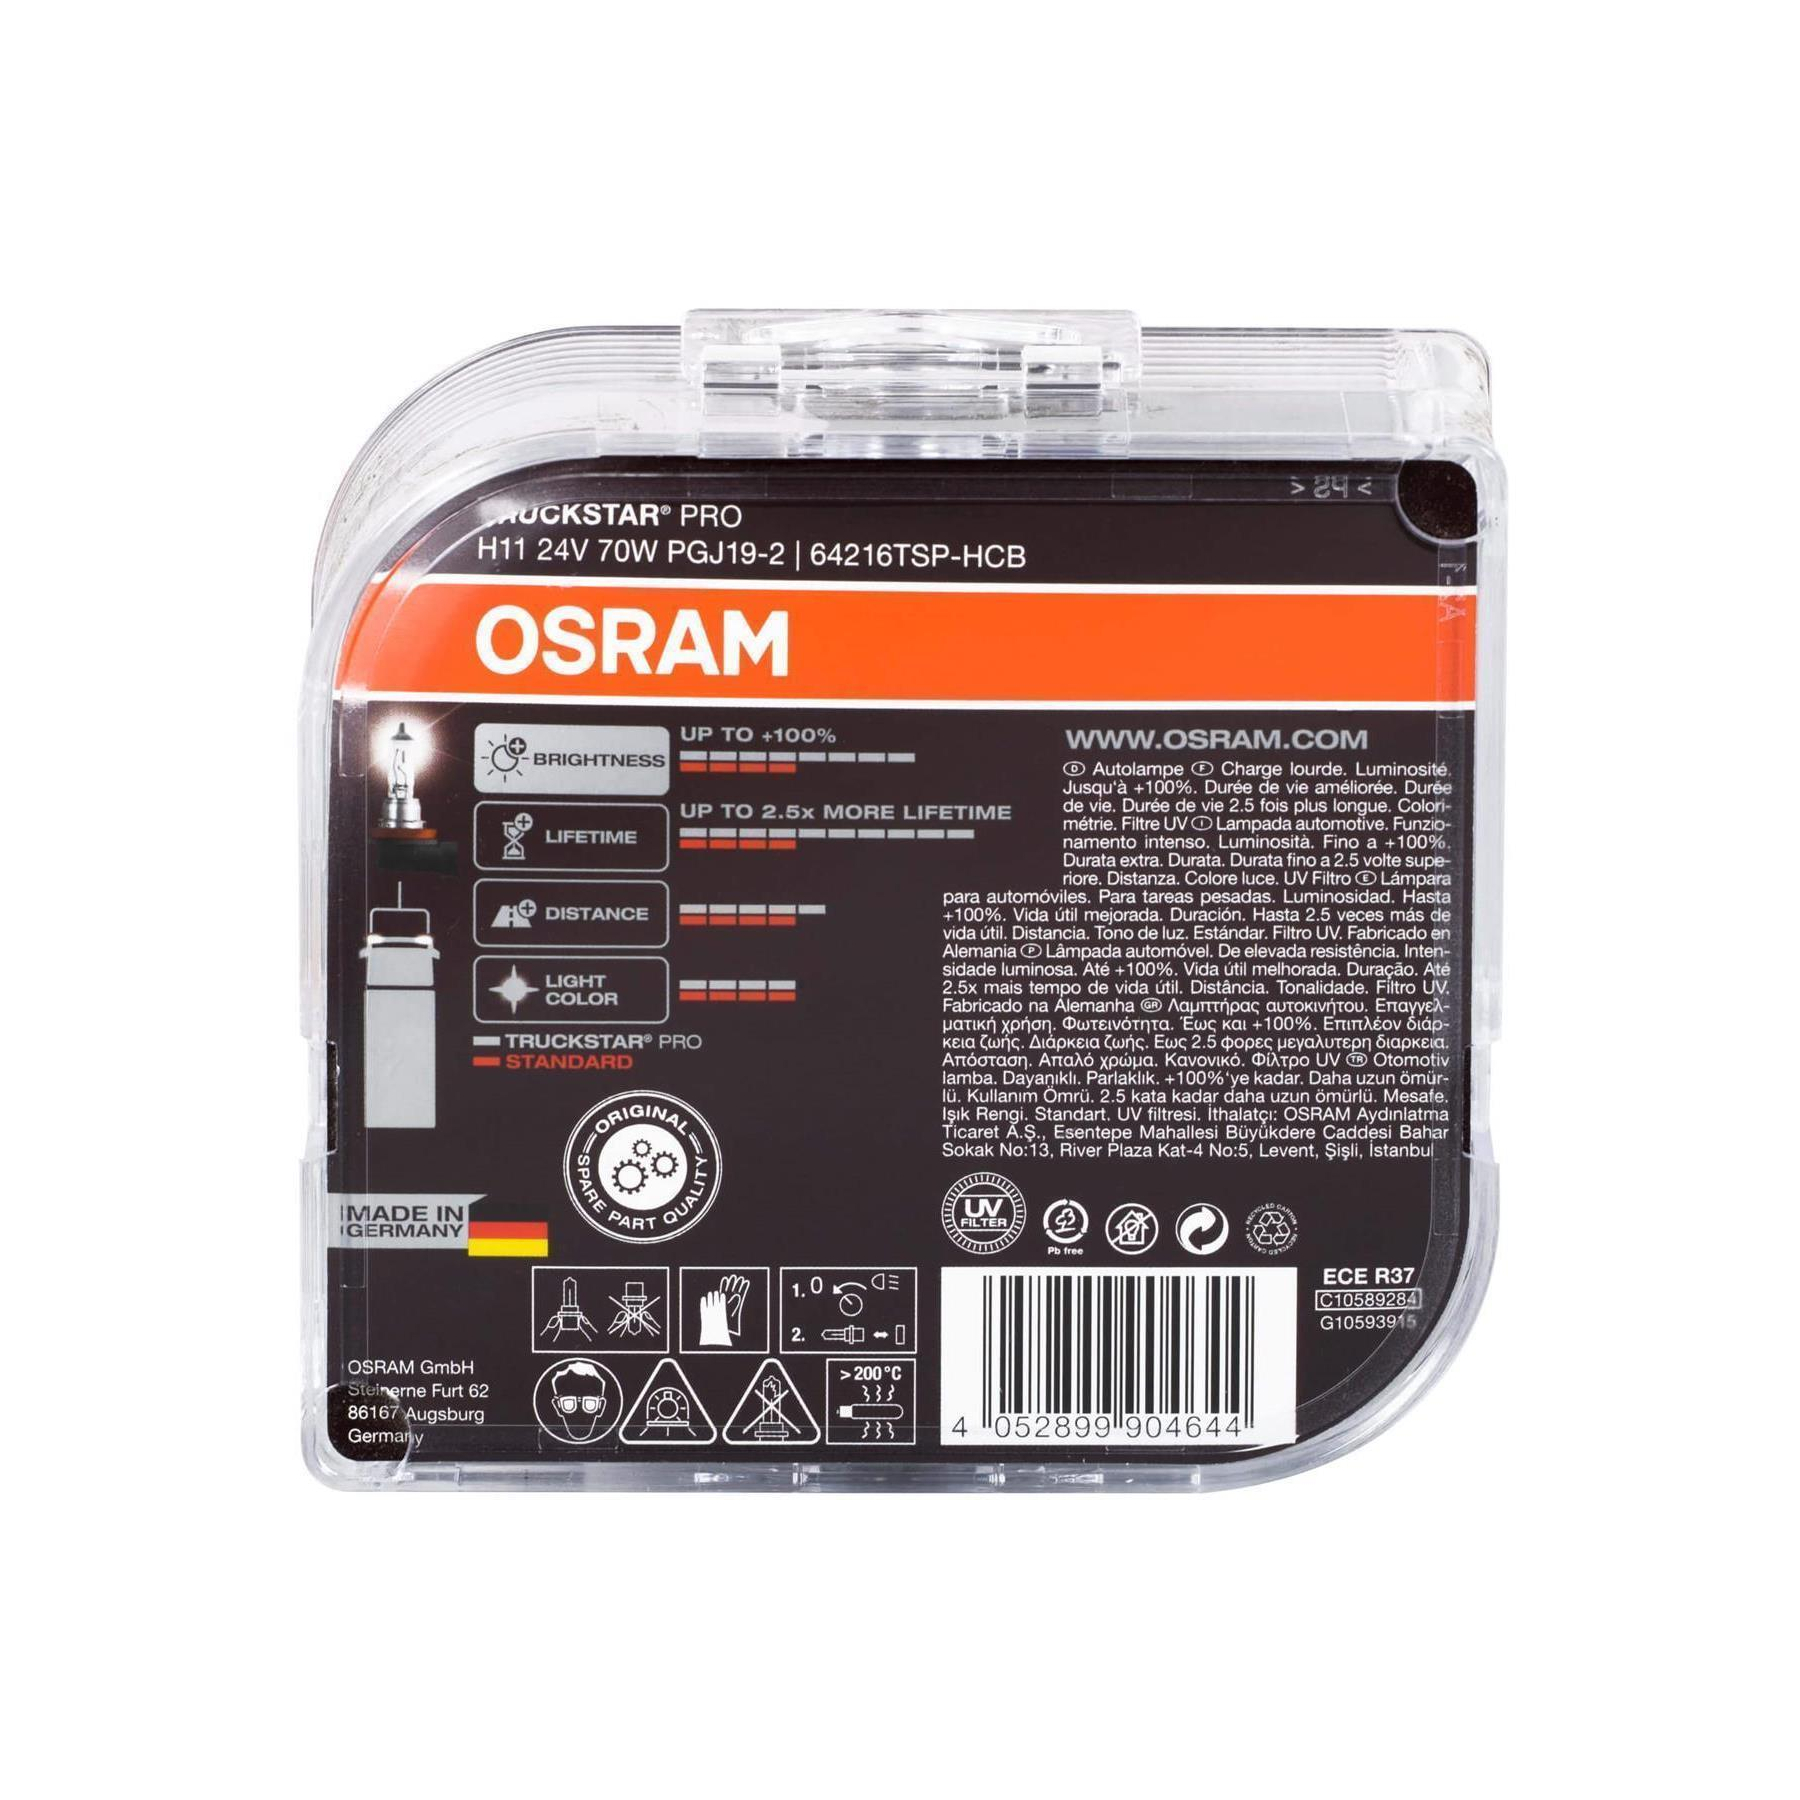 Osram Truckstar Pro H7 Halogen Lampe 24V 70W